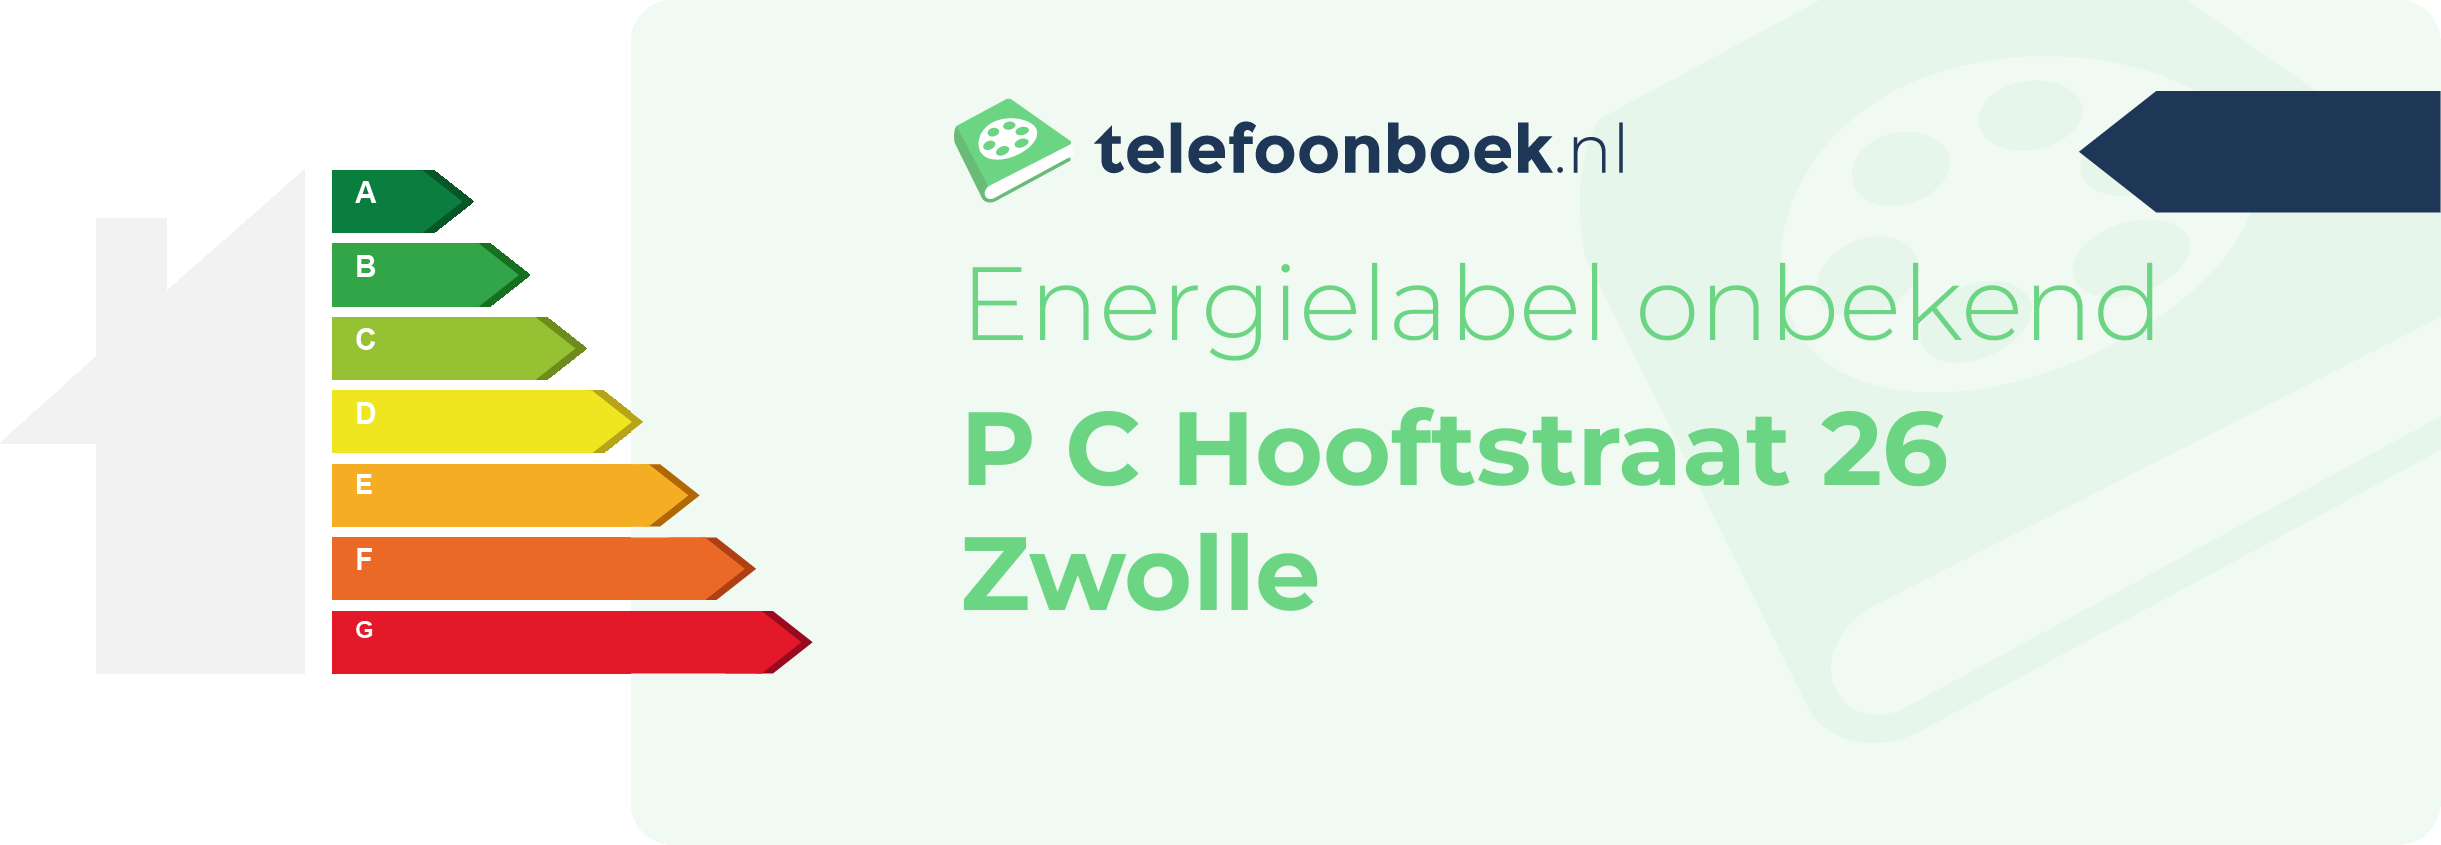 Energielabel P C Hooftstraat 26 Zwolle